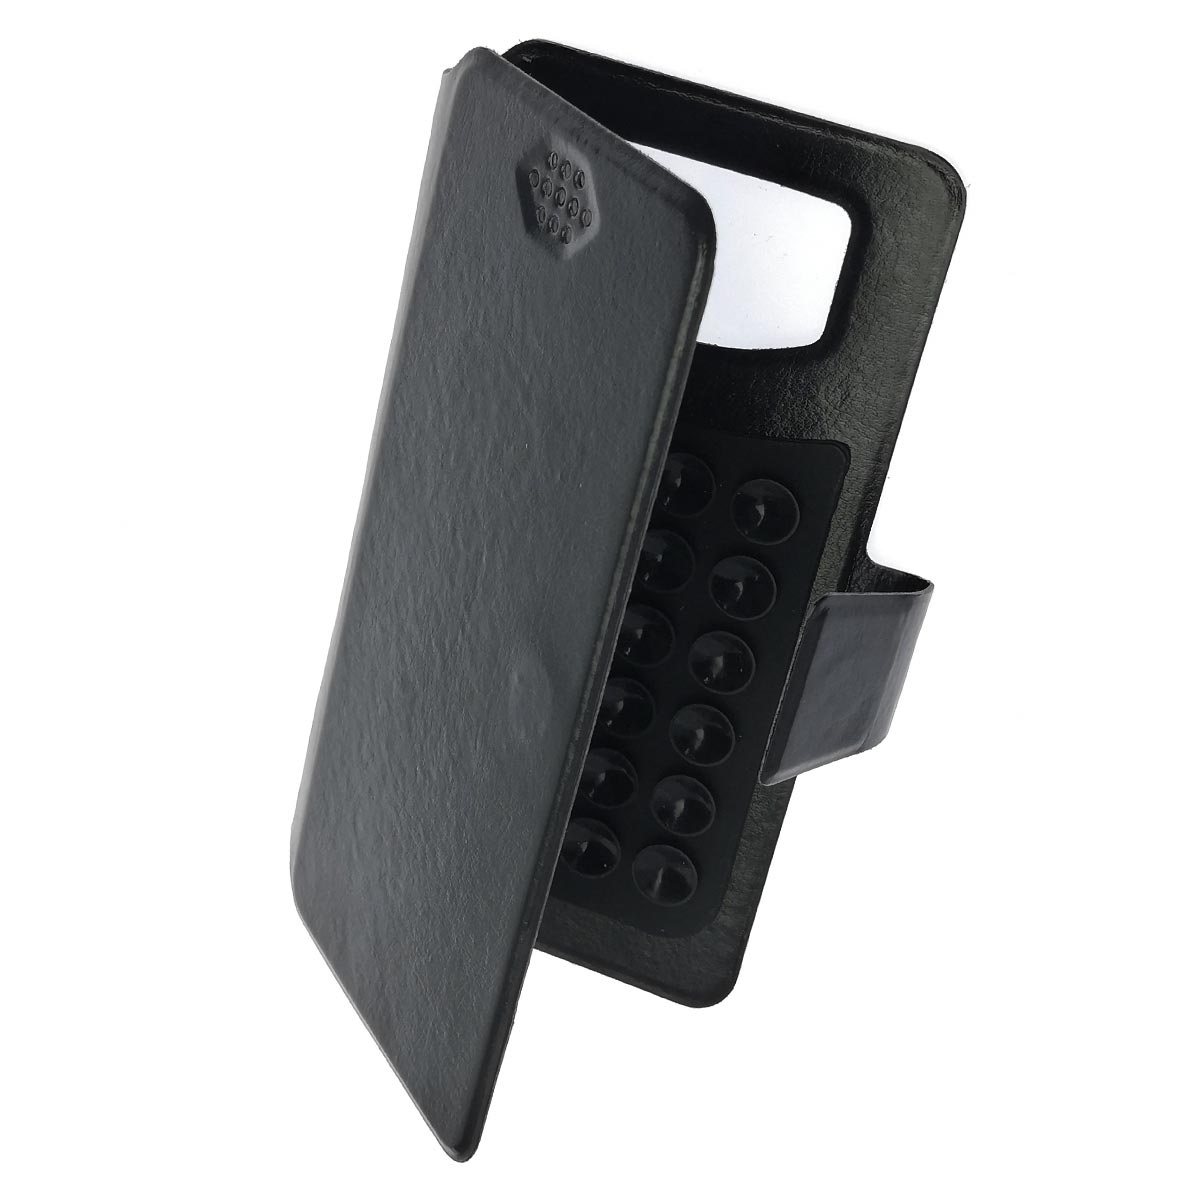 Чехол книжка универсальная для смартфонов размером 3.5 - 4.0, экокожа, цвет черный